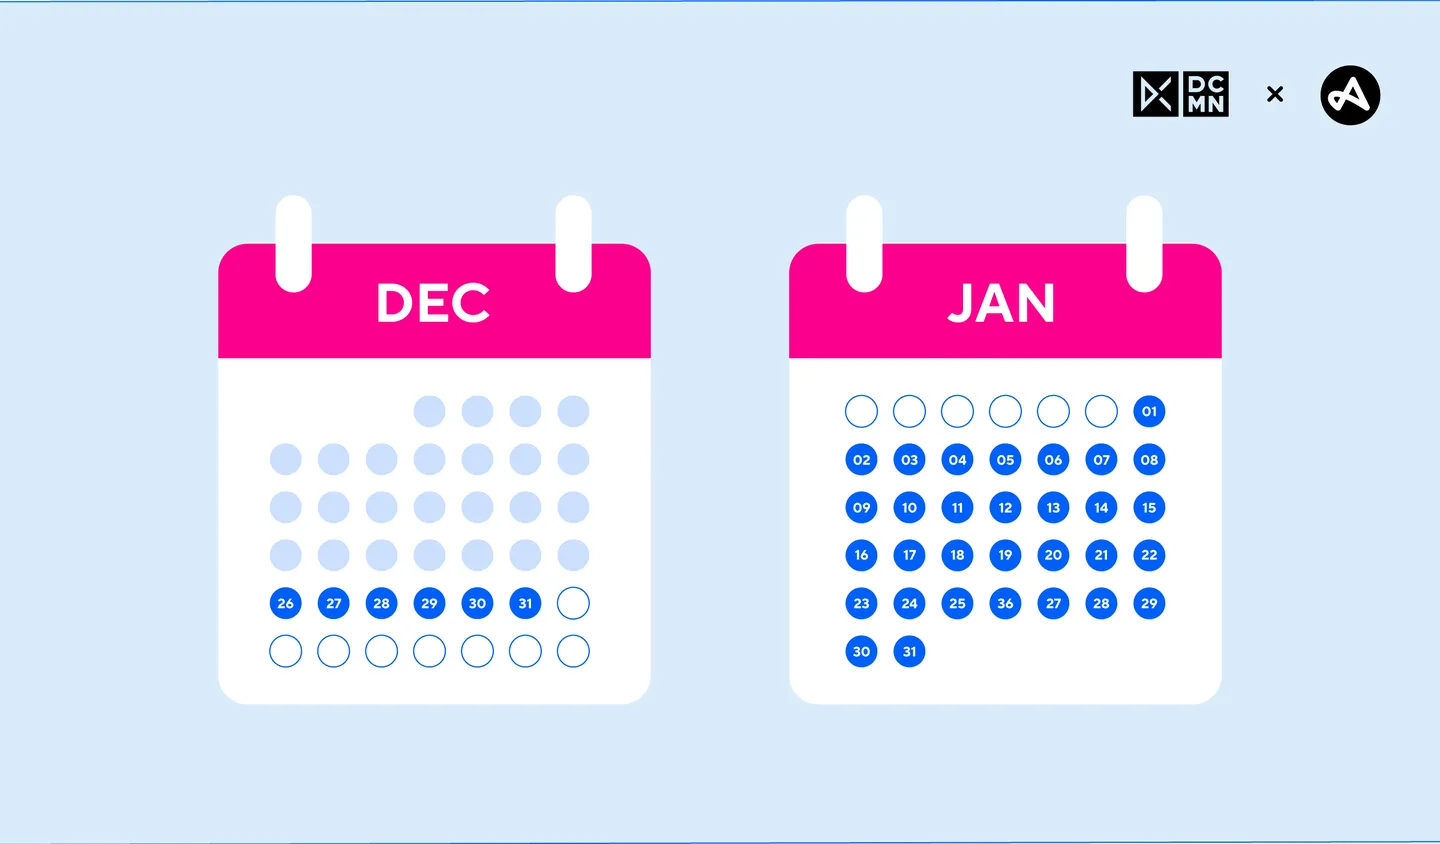 Calendar displaying quarter 5 dates December 26 to January 31